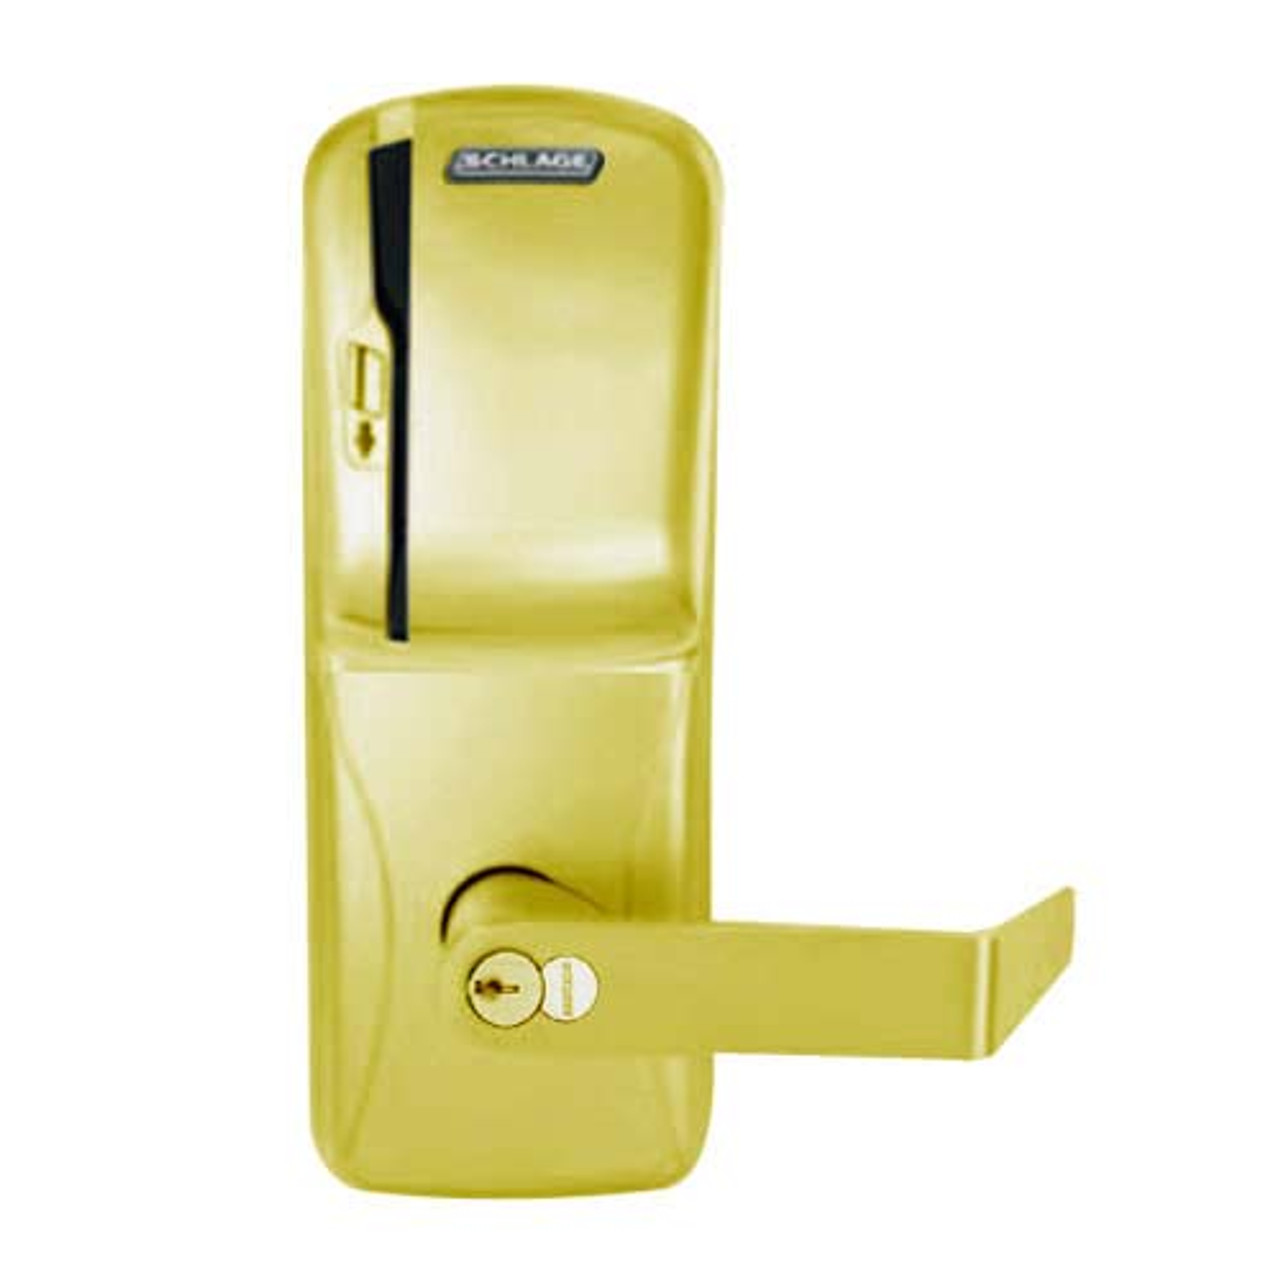 CO200-MS-70-MS-RHO-GD-29R-605 Mortise Electronic Swipe Locks in Bright Brass